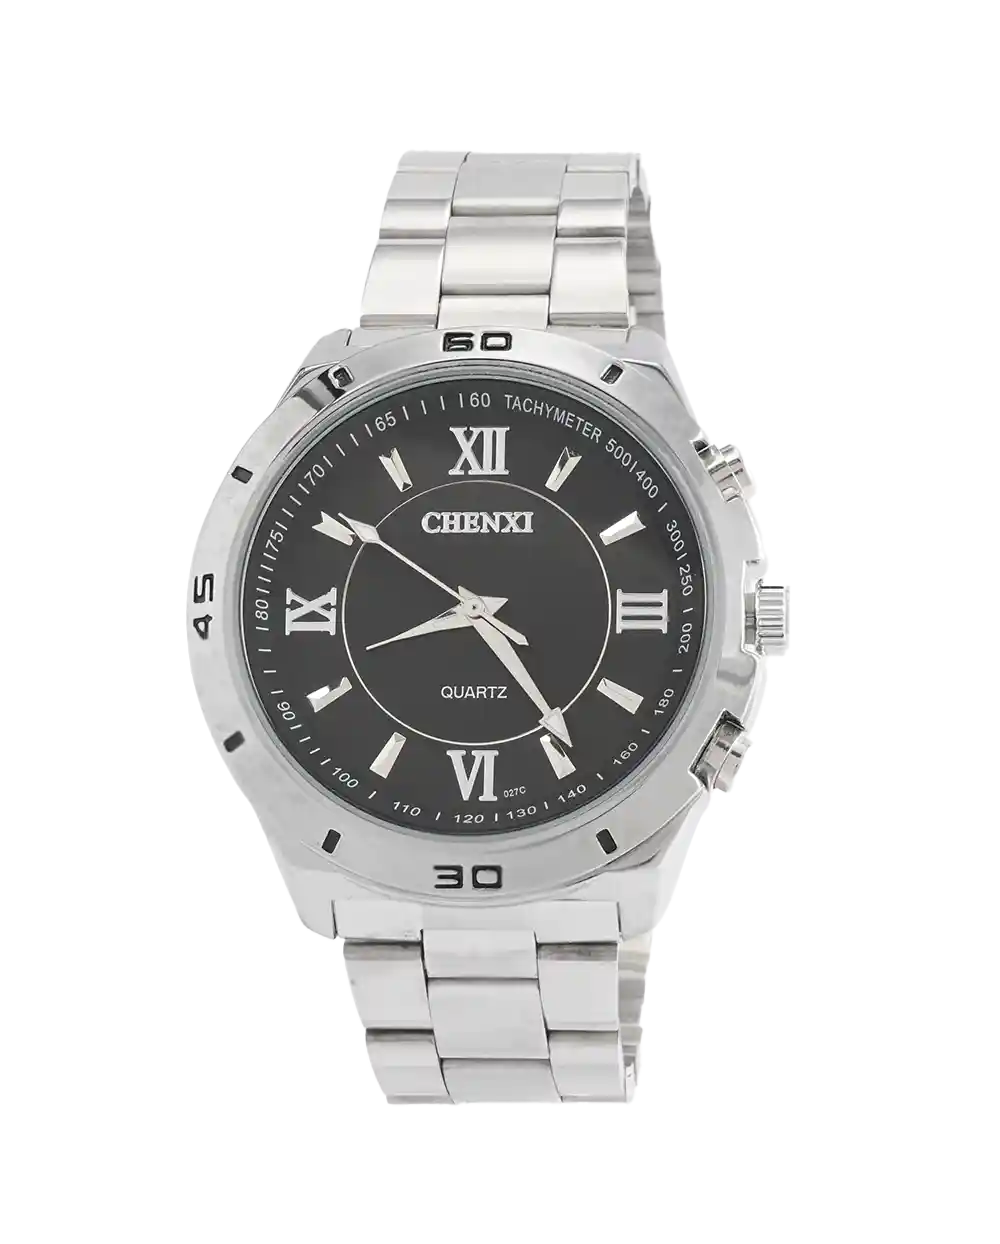 خرید ساعت مچی مردانه چانگ شی CHENXI مدل 1818 صفحه مشکی قیمت 650 هزارتومان به همراه ارسال رایگان و جعبه ی ساعت کادویی | ساعت پسرانه اصلی